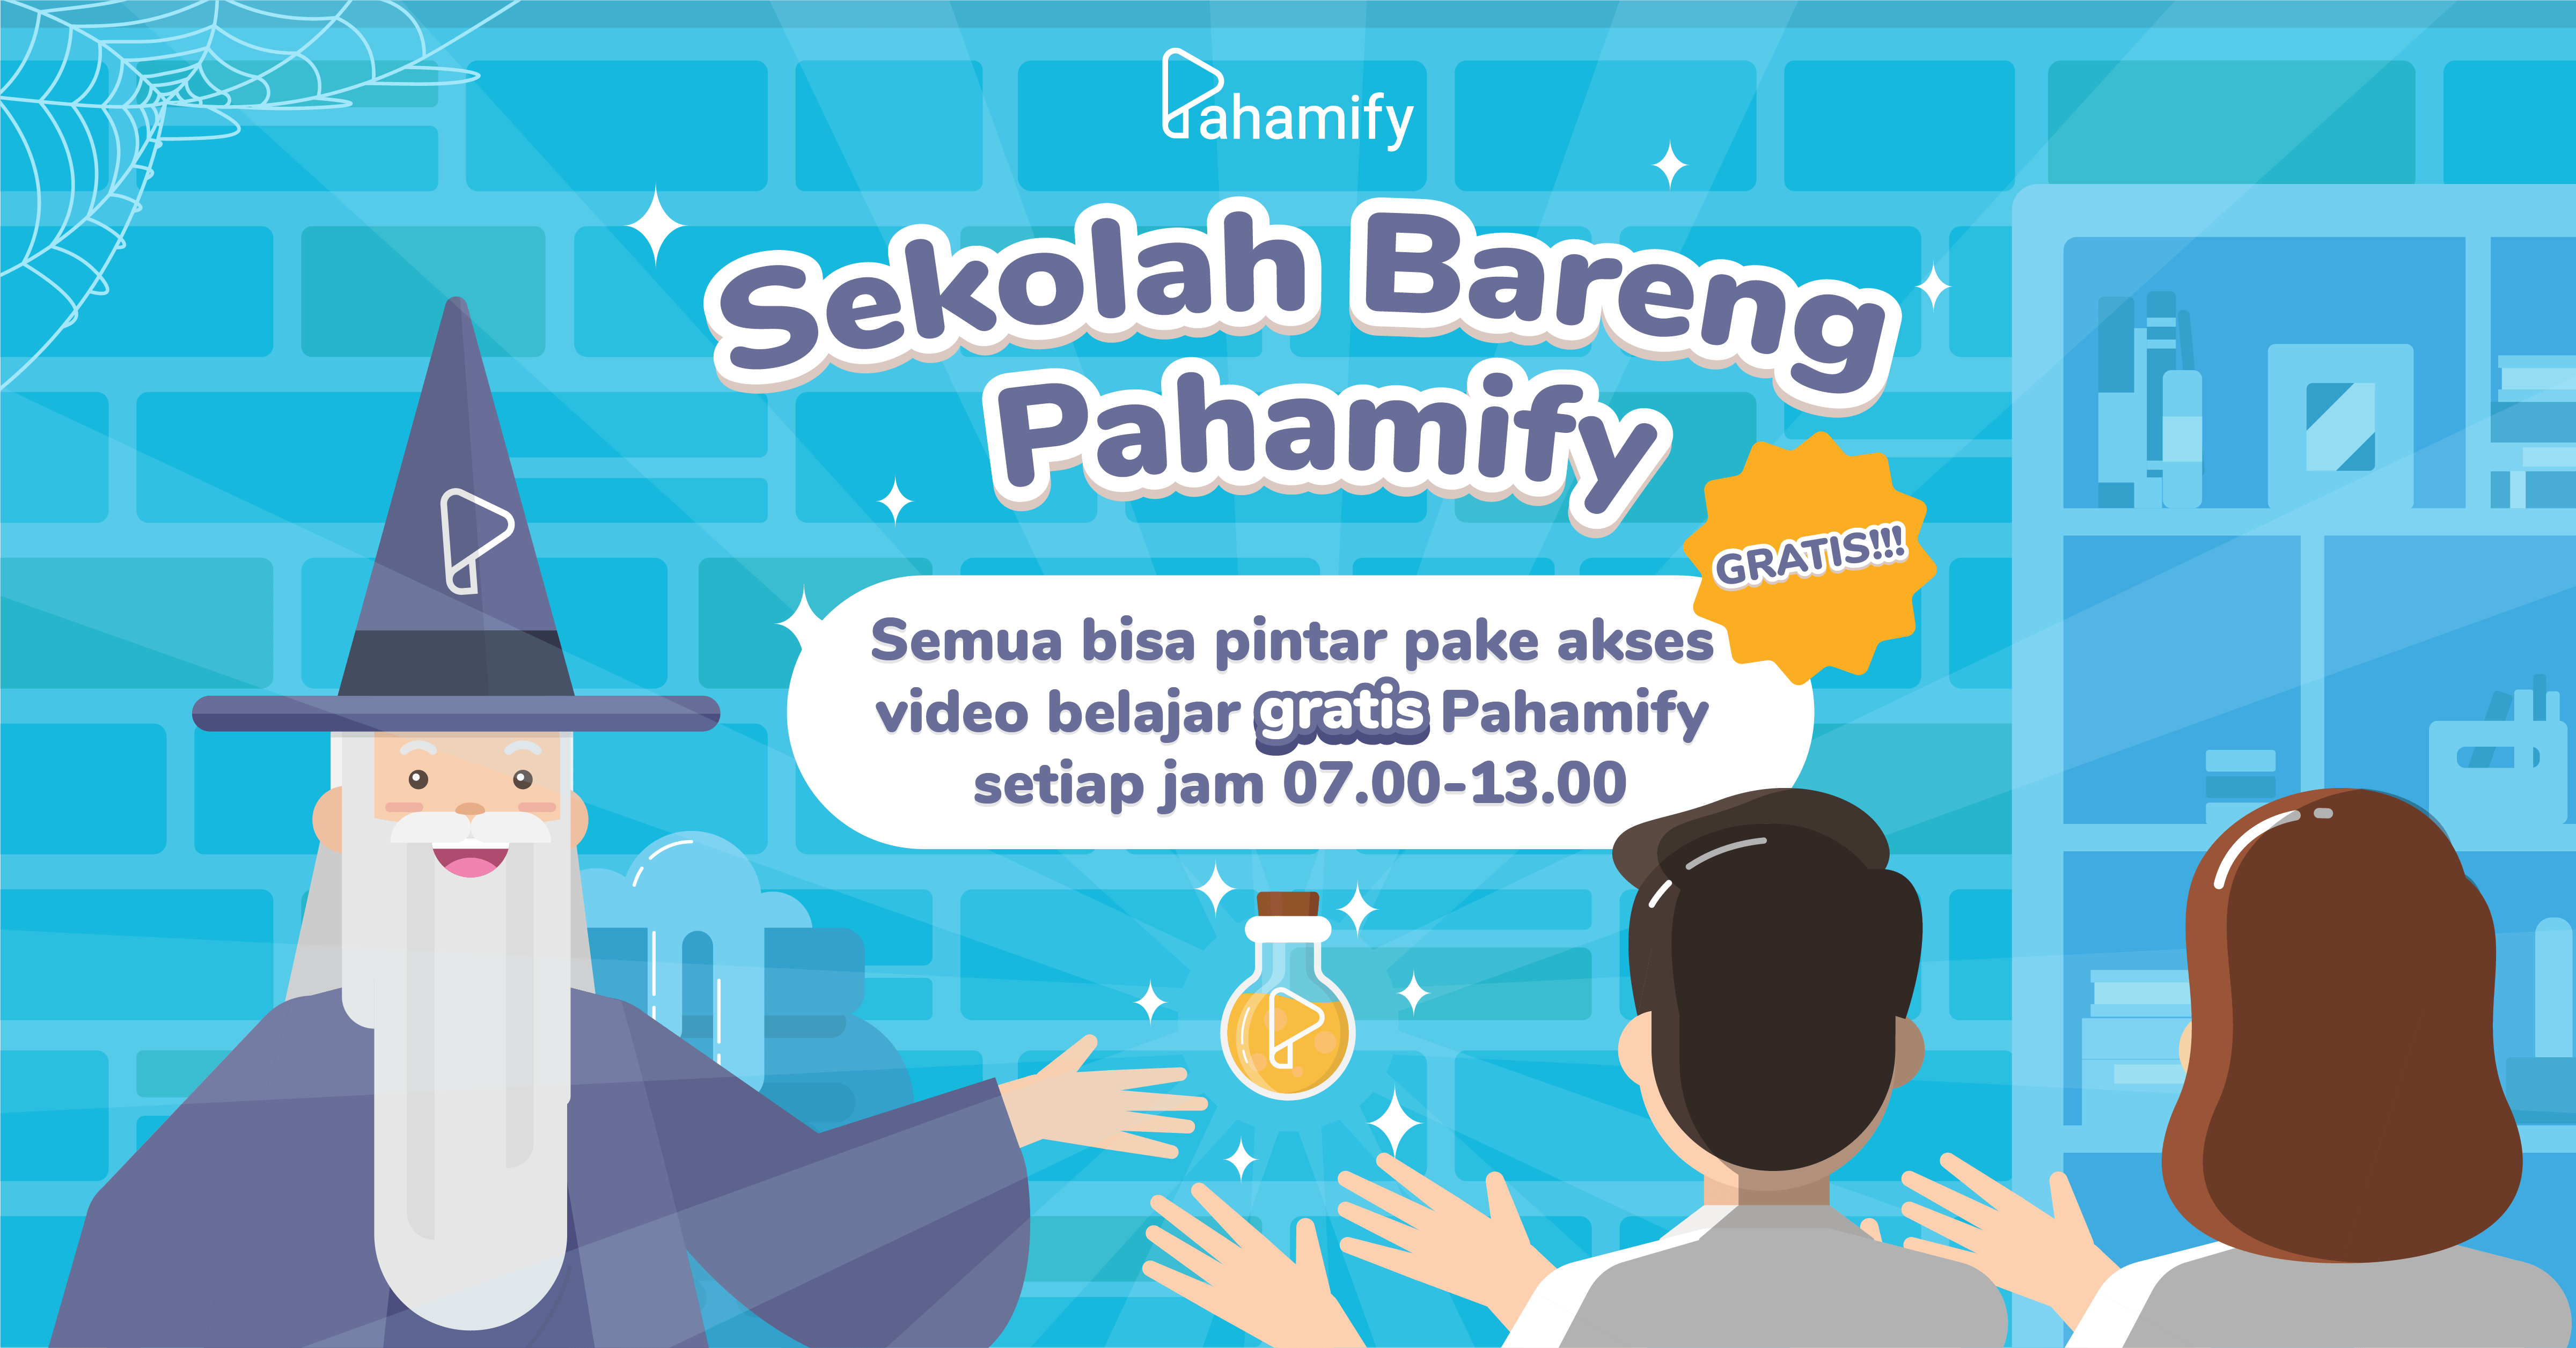 Sekolah Bareng Pahamify, kelas online gratis untuk guru dan pelajar se Indonesia.